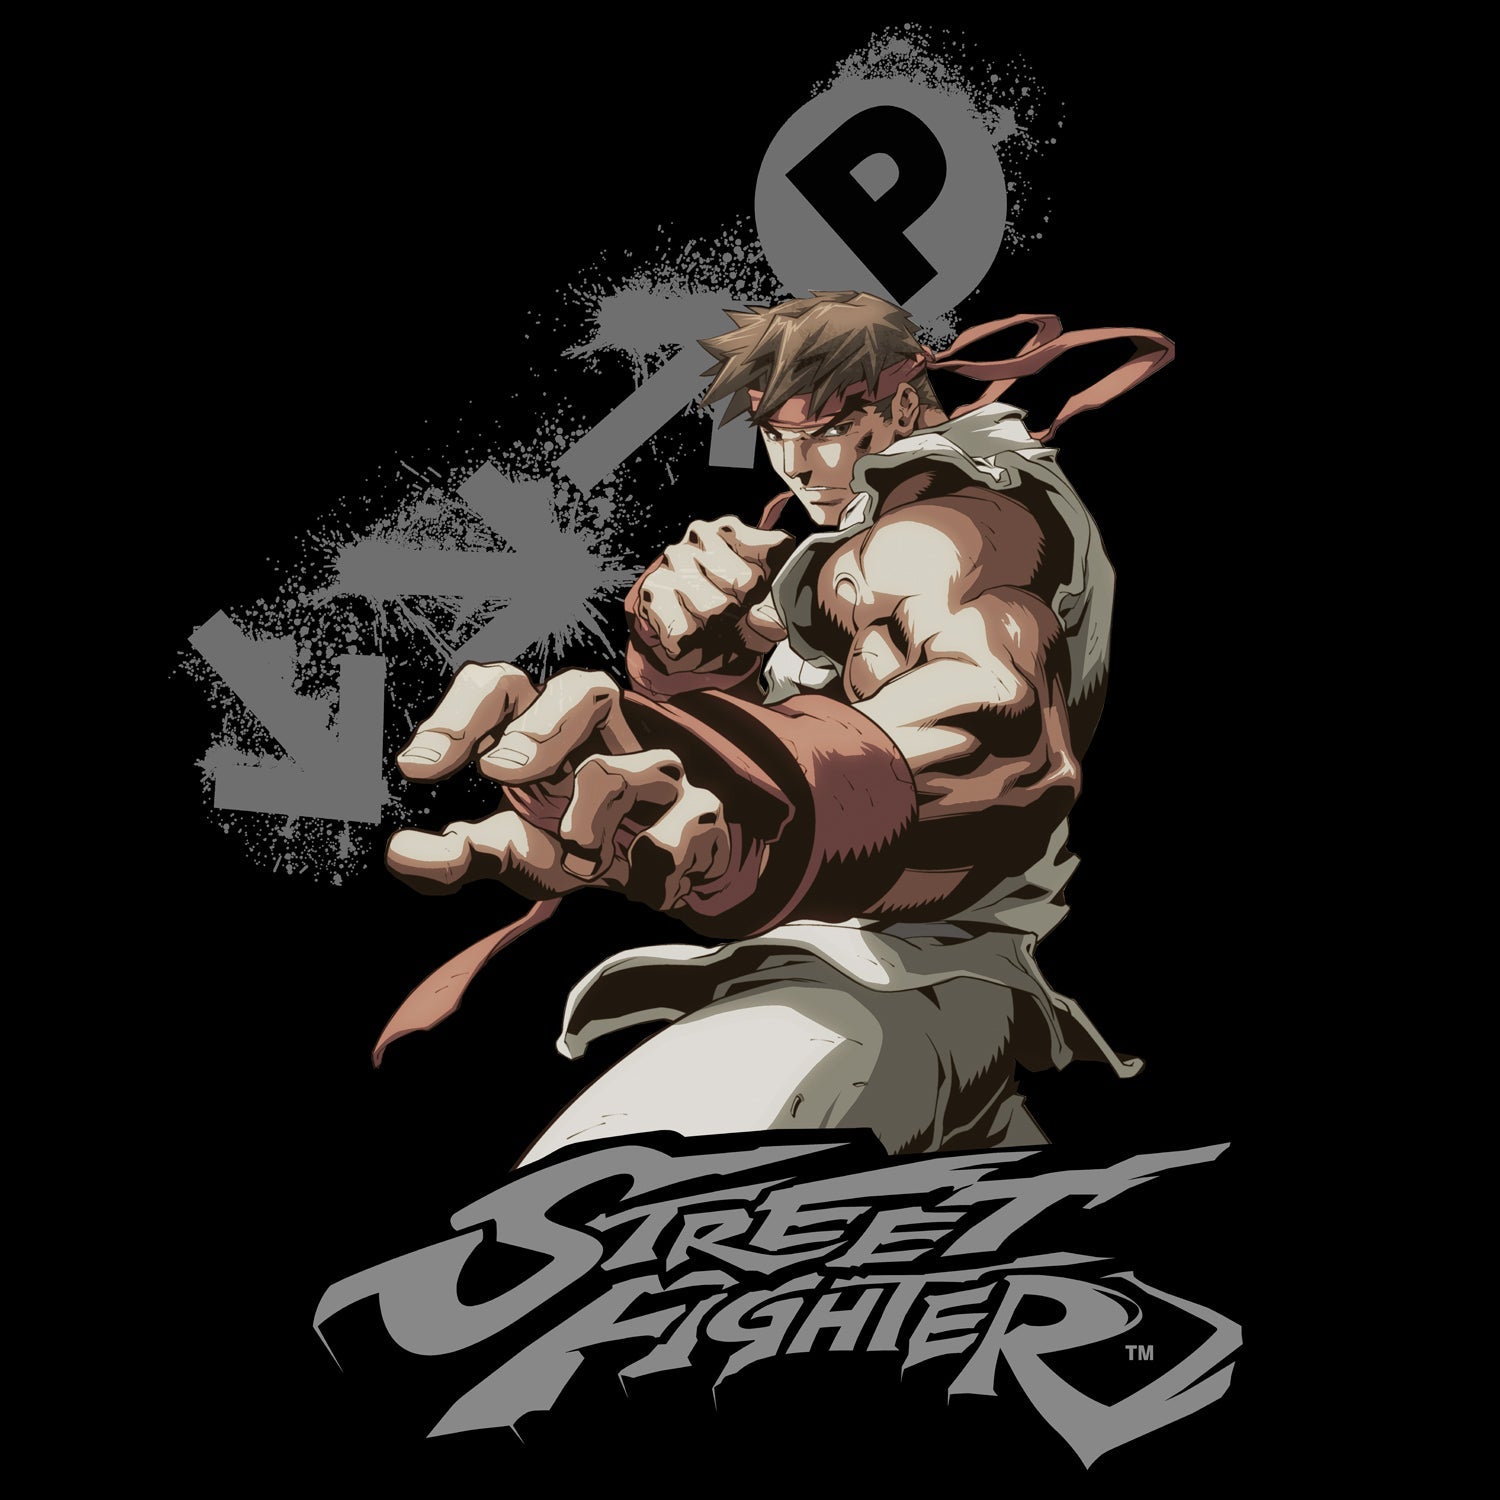 Street Fighter Ryu Portrait Fireball Official Women's T-shirt ()